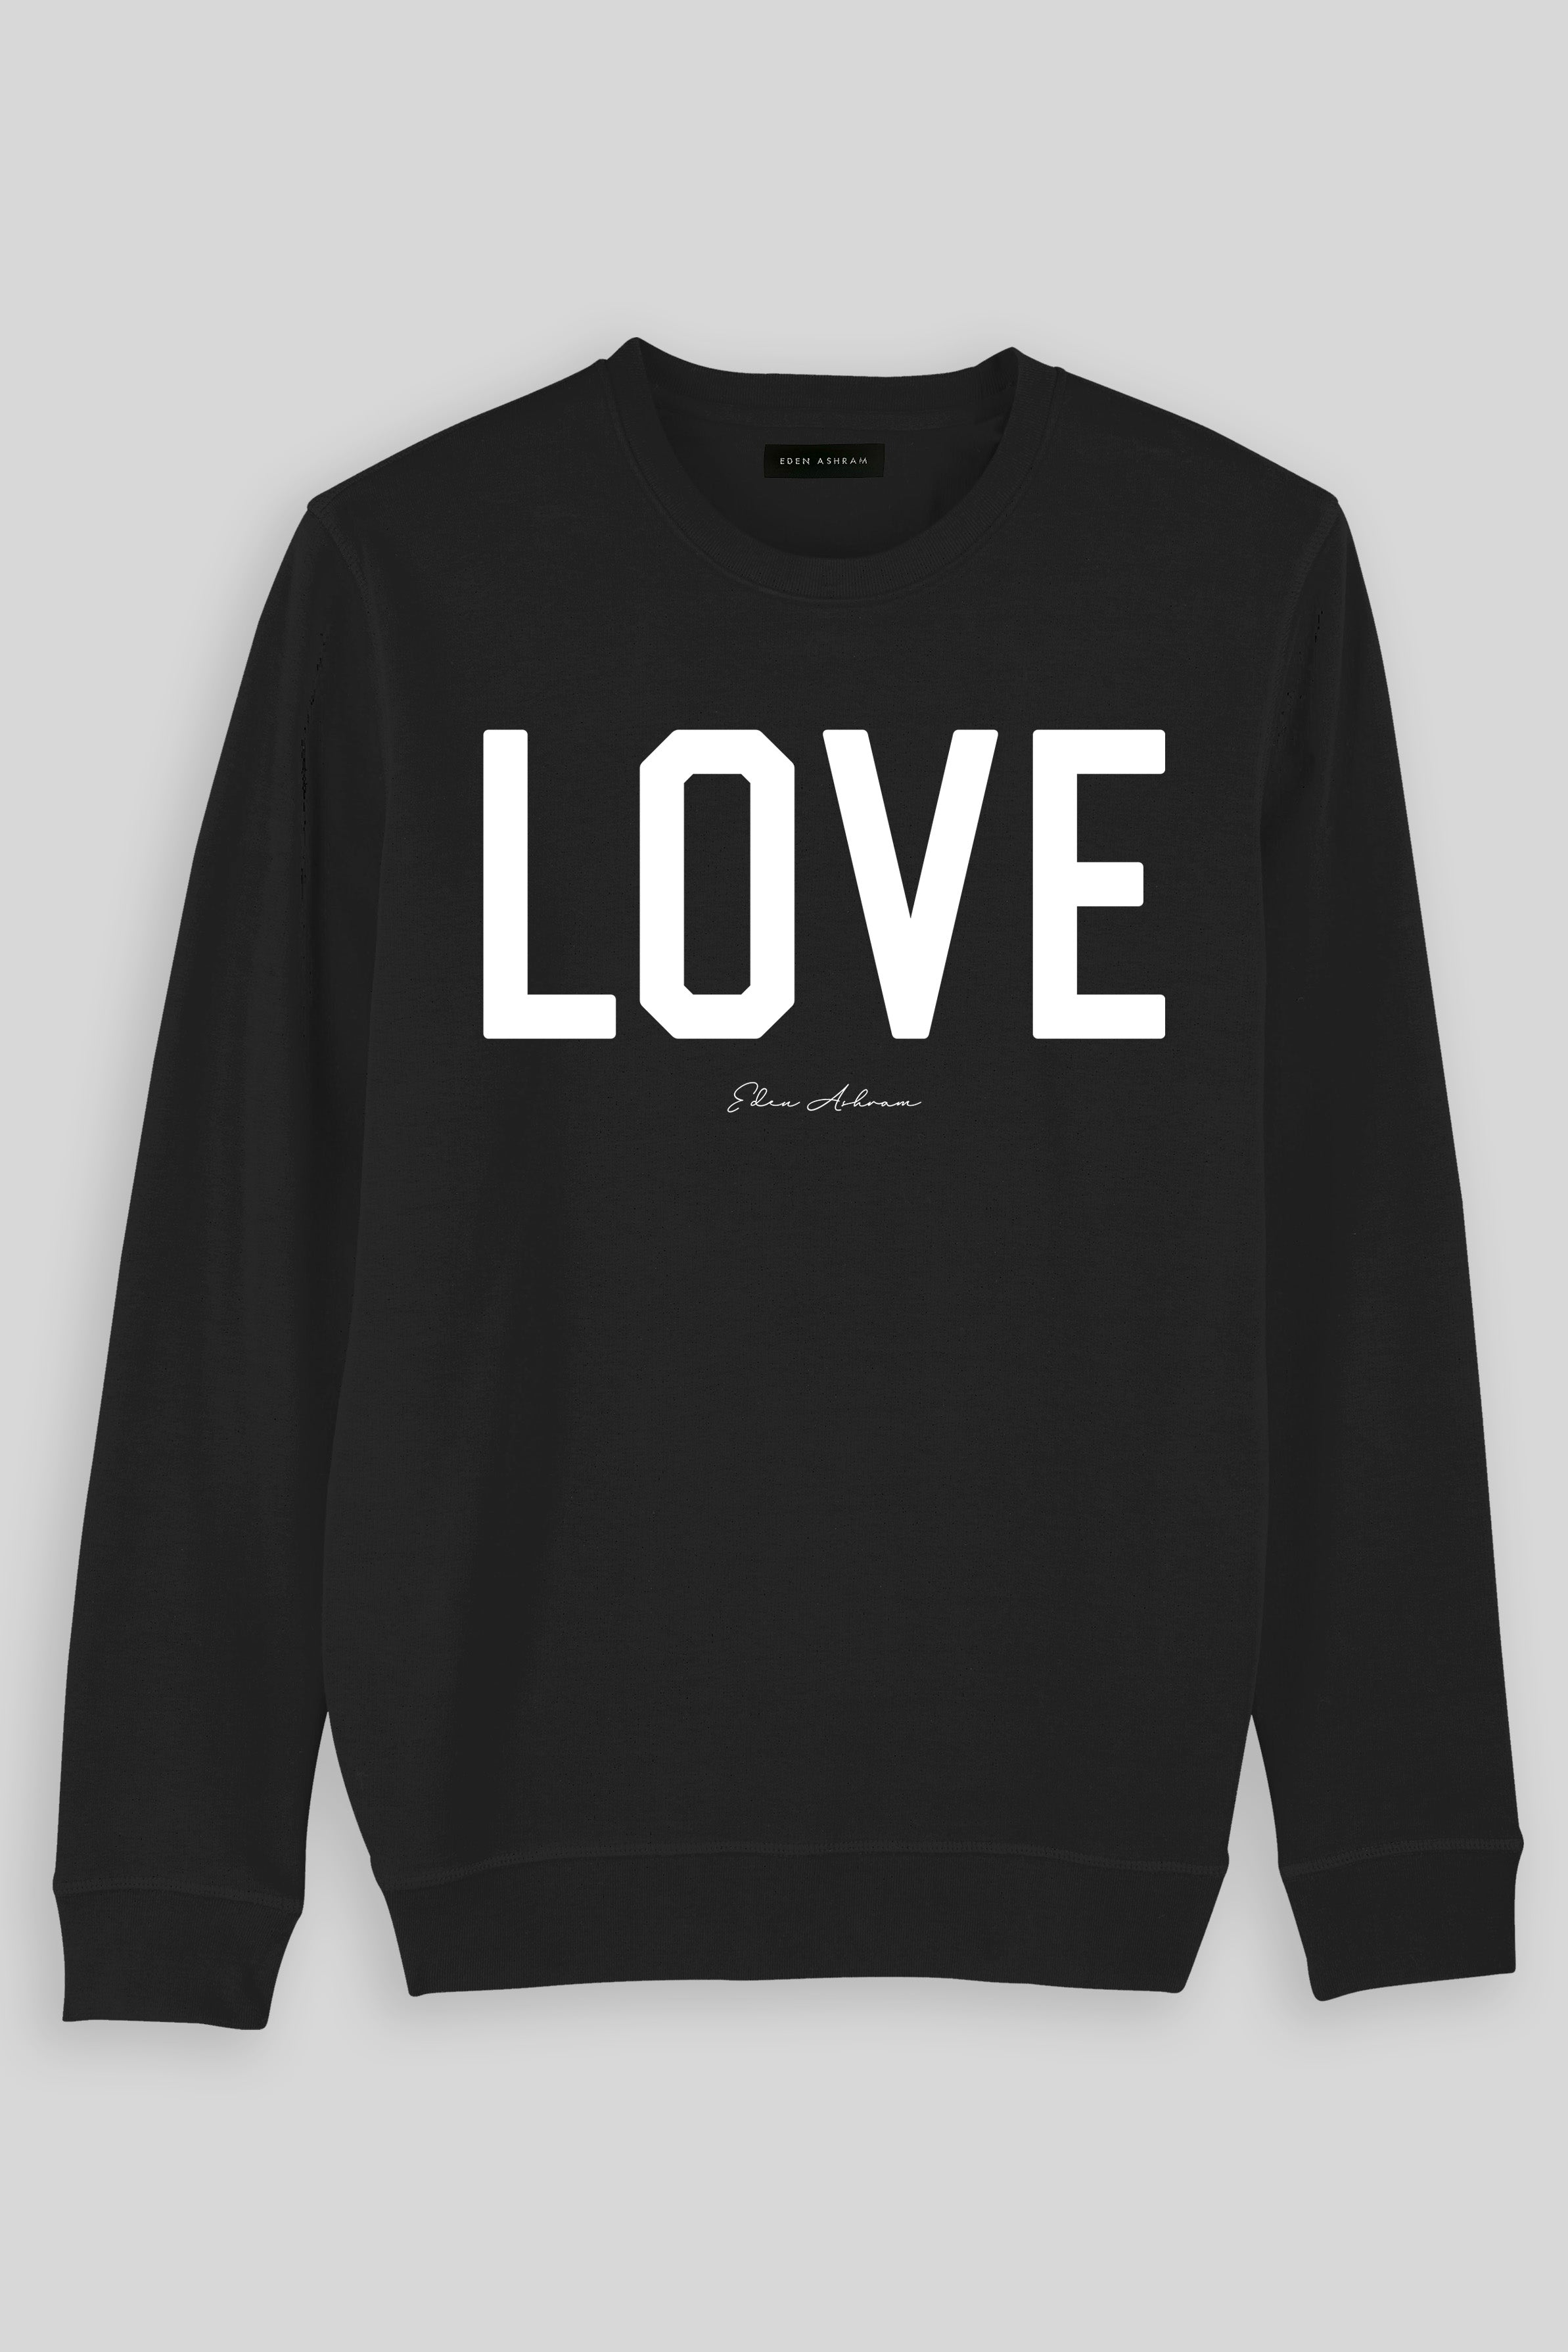 EDEN ASHRAM Love Premium Crew Neck Sweatshirt Black